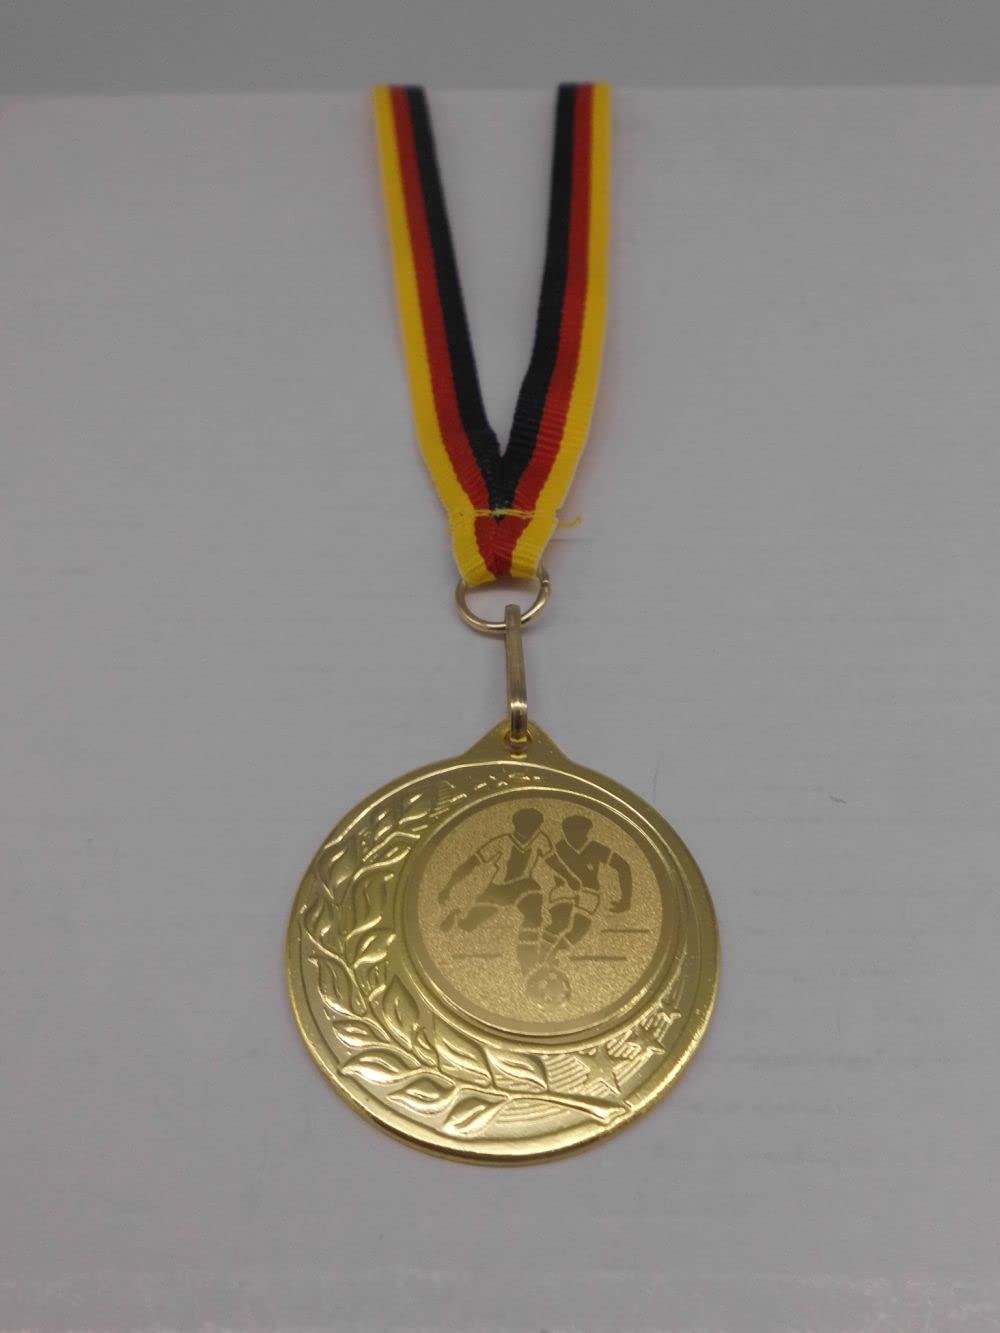 Fanshop Lünen Fußball 20 Stück Medaillen aus Stahl 40mm - inkl. Medaillen-Band - Emblem 25mm - Gold - Turnier - (9283)